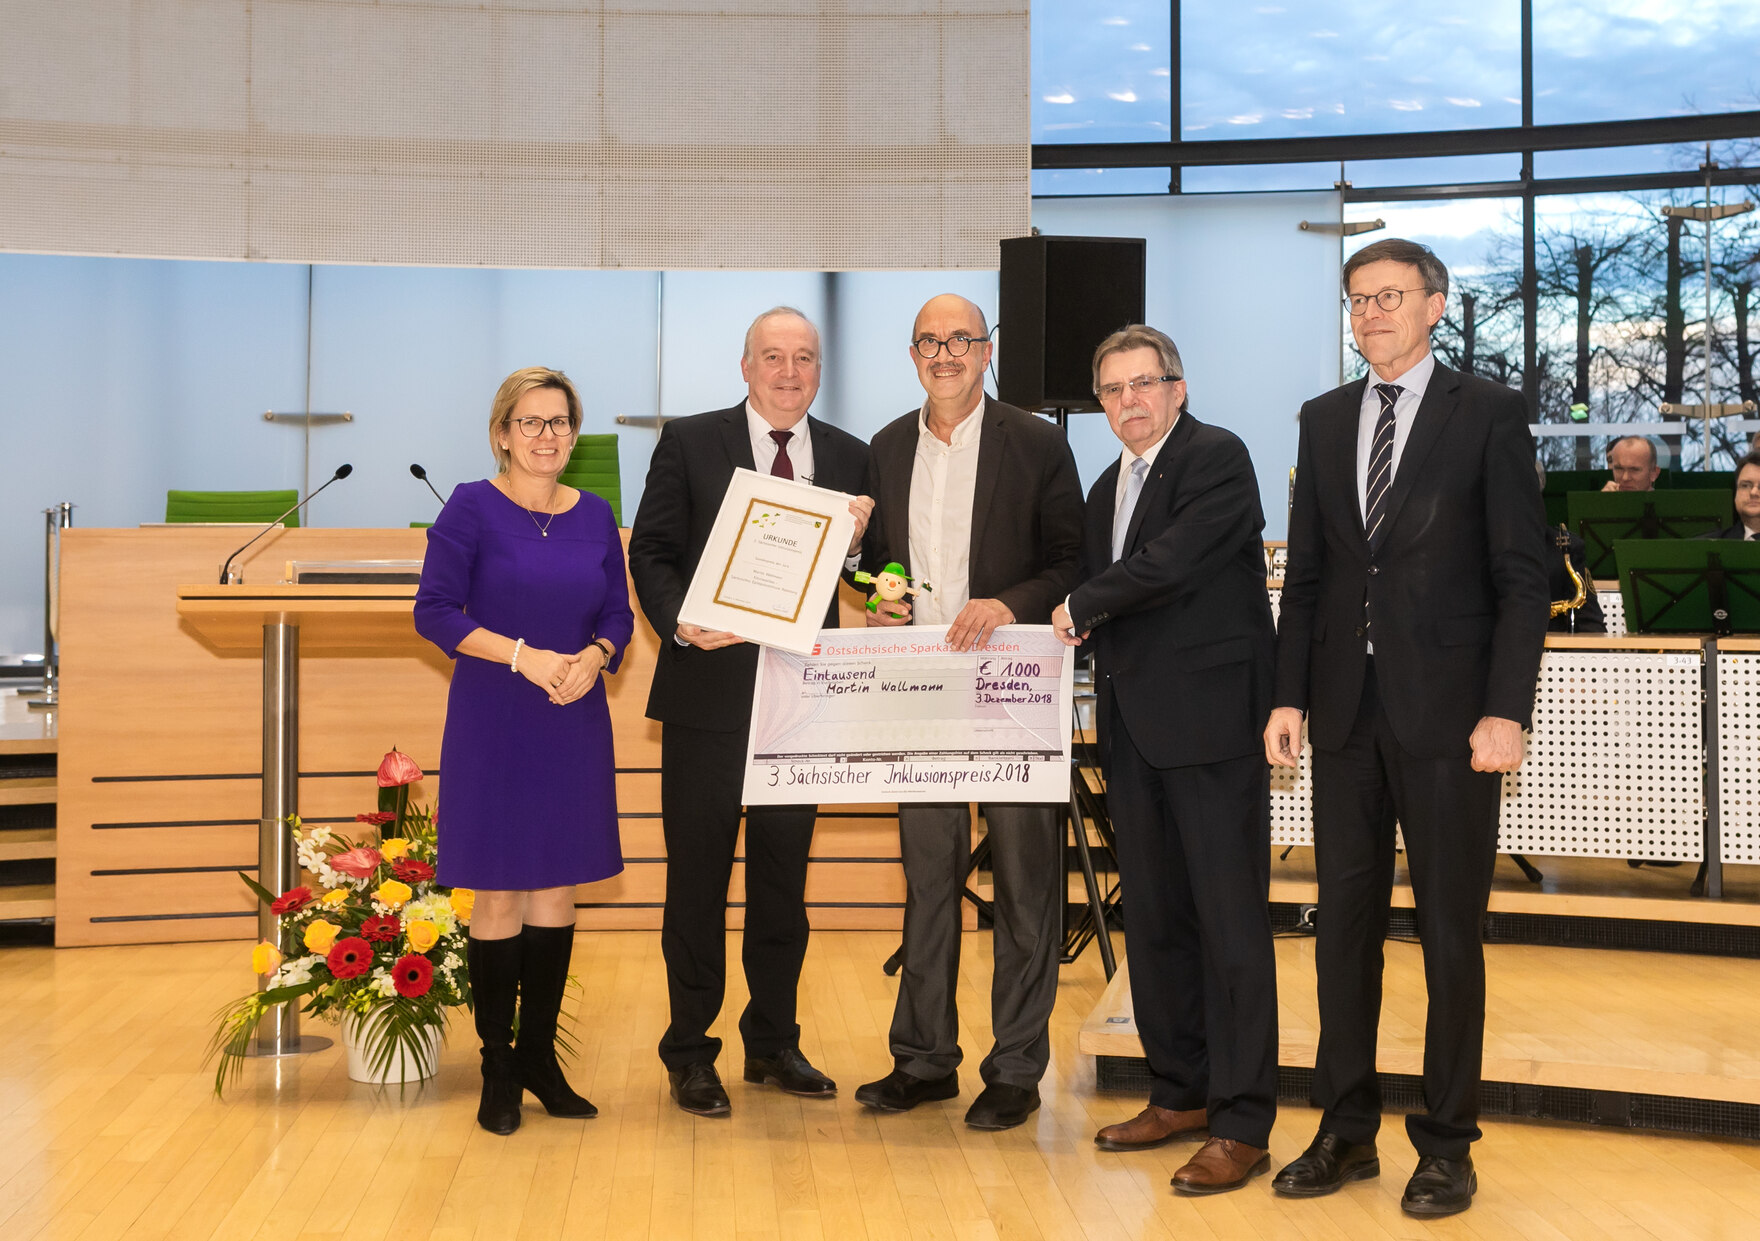 Der Preisträger steht zusammen mit dem Laudator, dem Behindertenbeauftragten, der Staatsministerin und dem Landtagspräsidenten in der Mitte des Plenarsaals des Sächsischen Landtages.